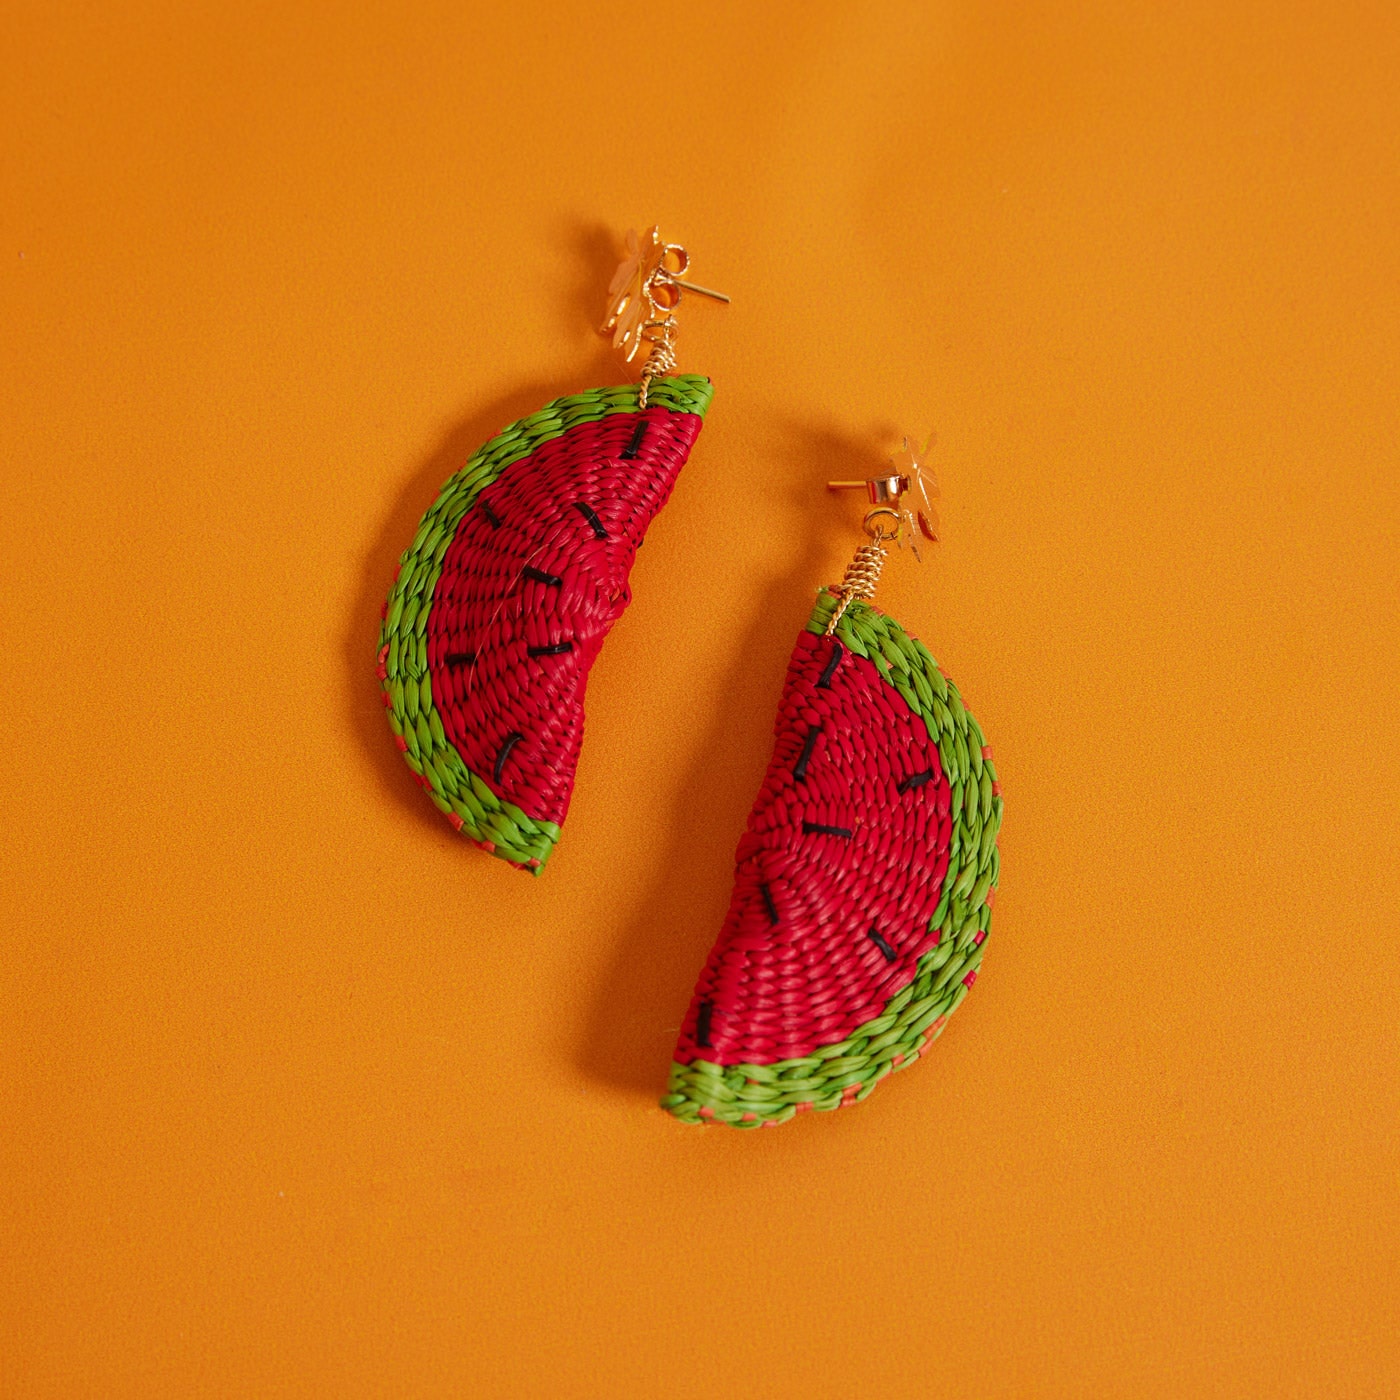 Wicker Darling's watermelon earrings on an orange background